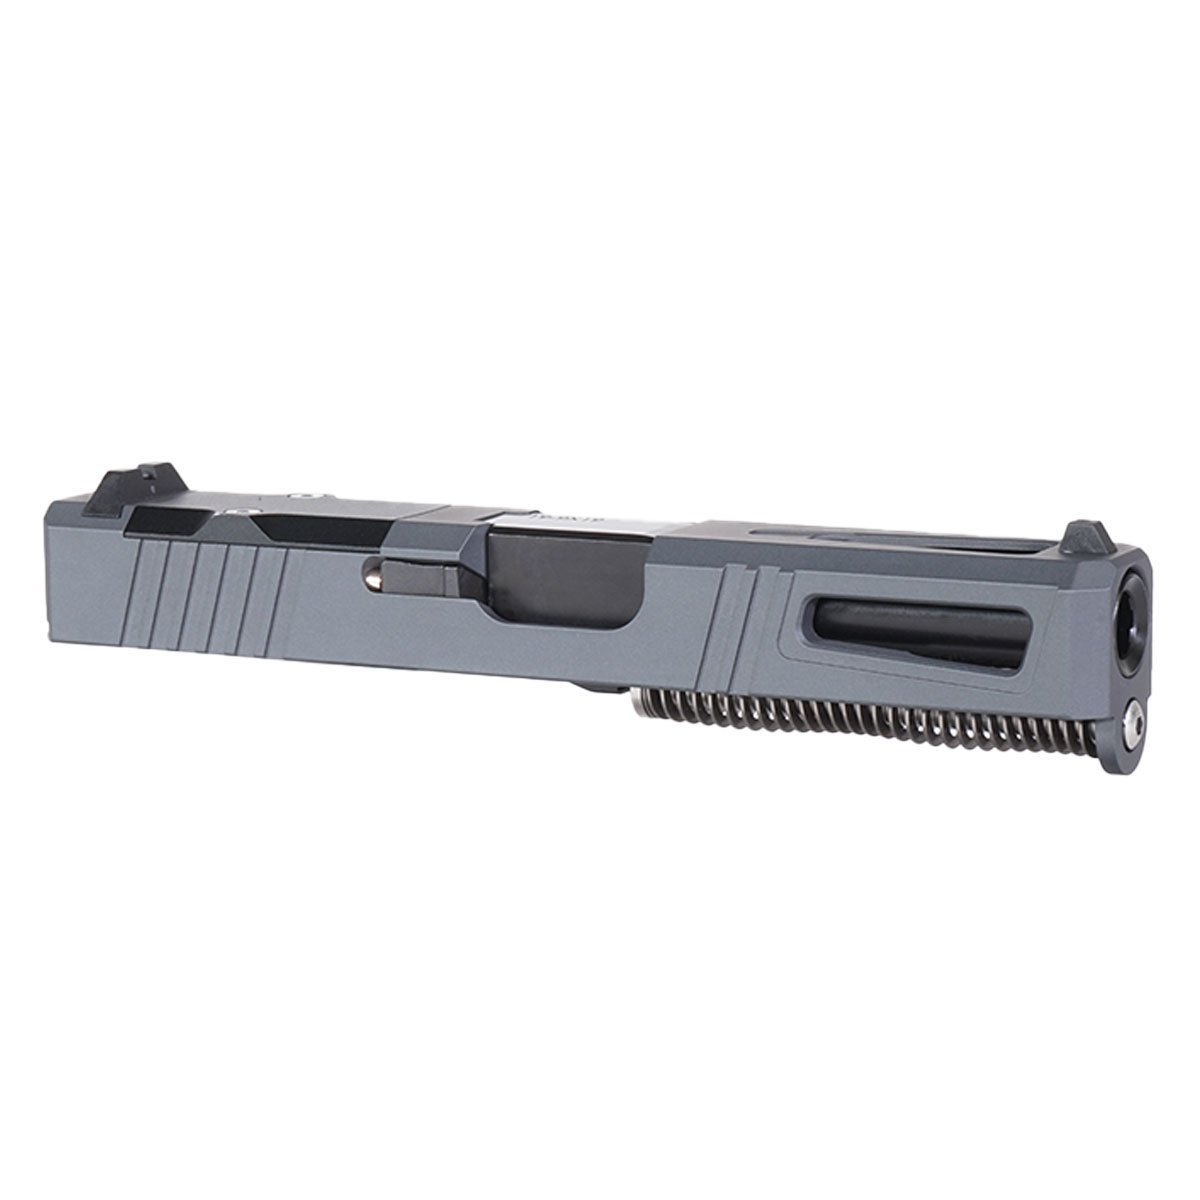 MMC 'Sneak Peek' 9mm Complete Slide Kit - Glock 19 Gen 1-3 Compatible